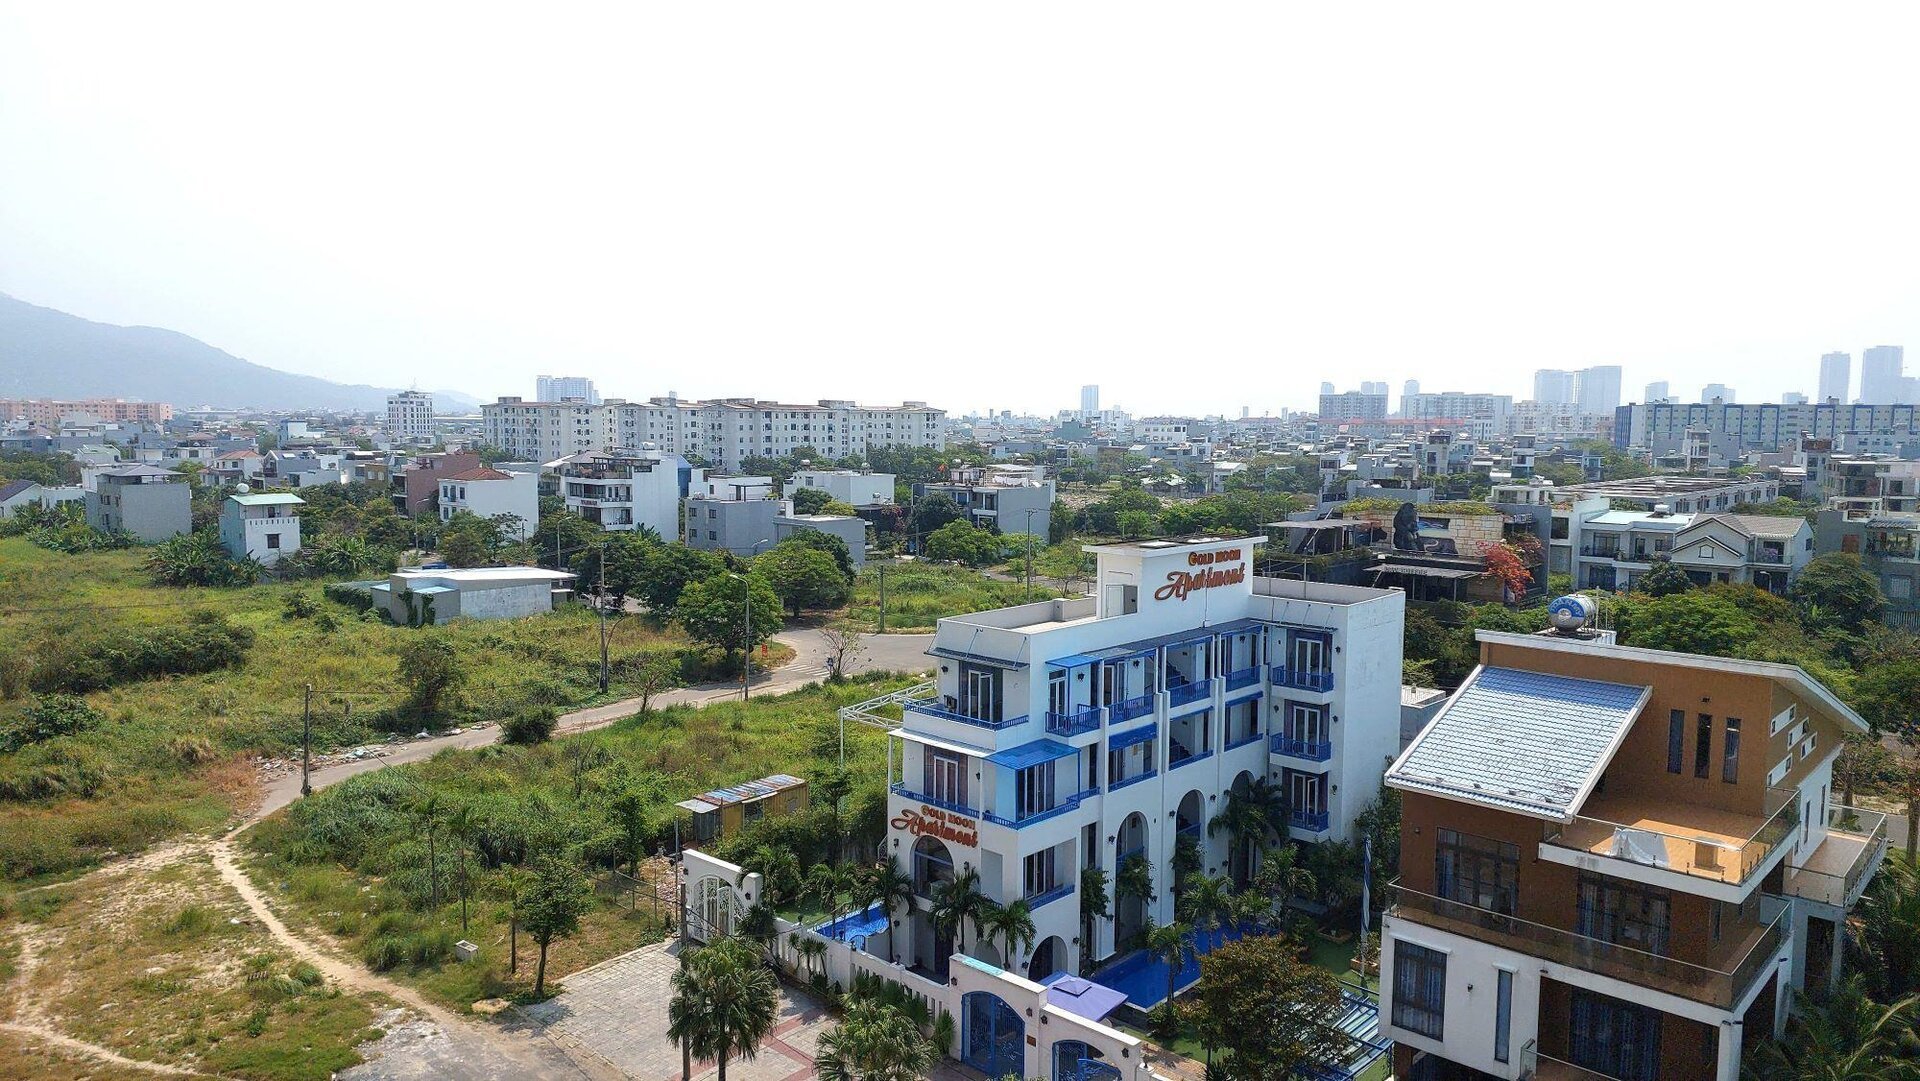 Những bất động sản khiến Đà Nẵng gặp khó khi thi hành bản án liên quan Vũ 'nhôm' - Ảnh 9.